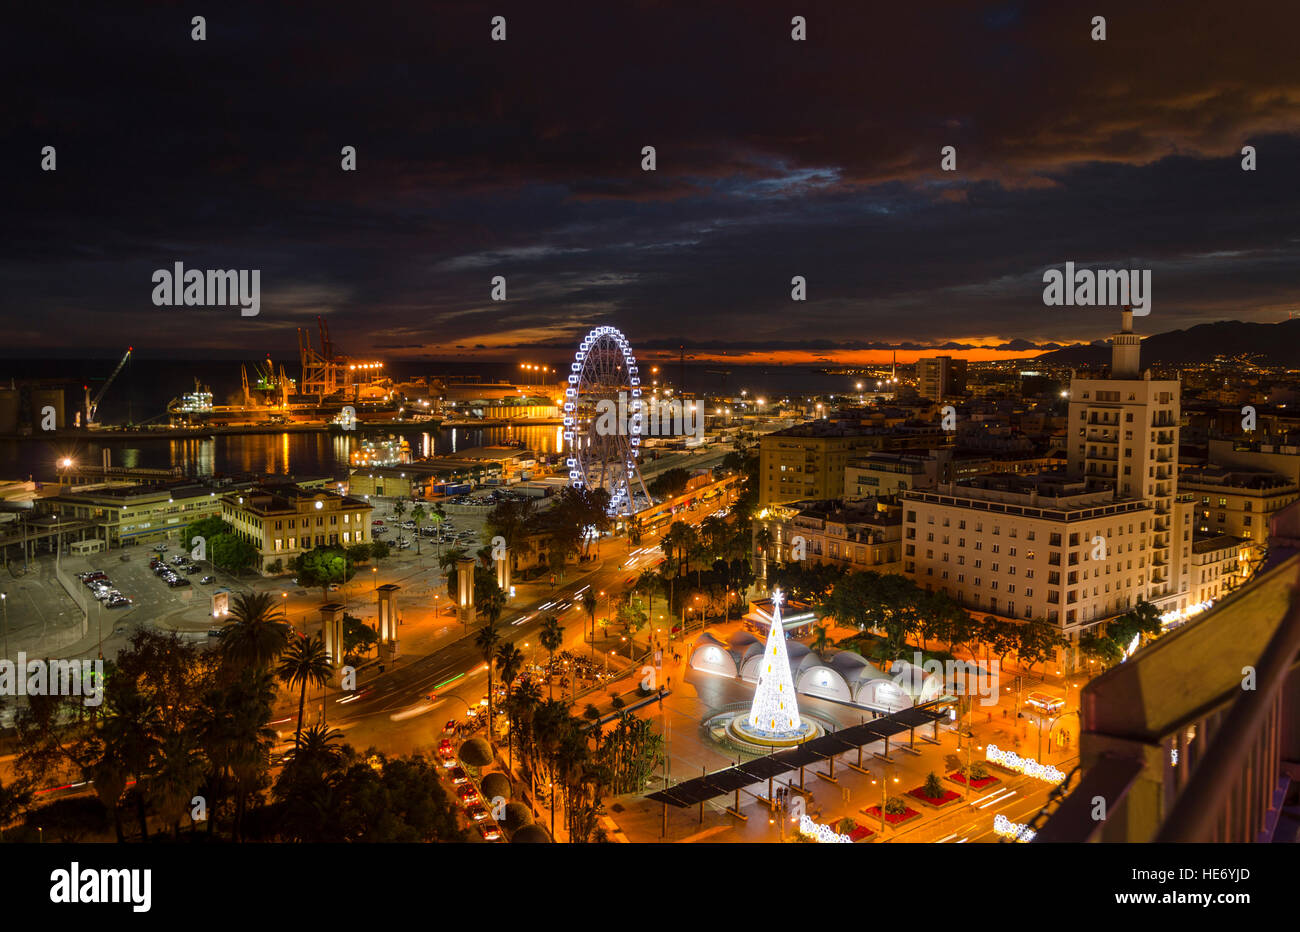 Night VIew Plaza Marina mit Ferris wheel, Hafen von Malaga, Sonnenuntergang, Andalusien, Spanien. Stockfoto